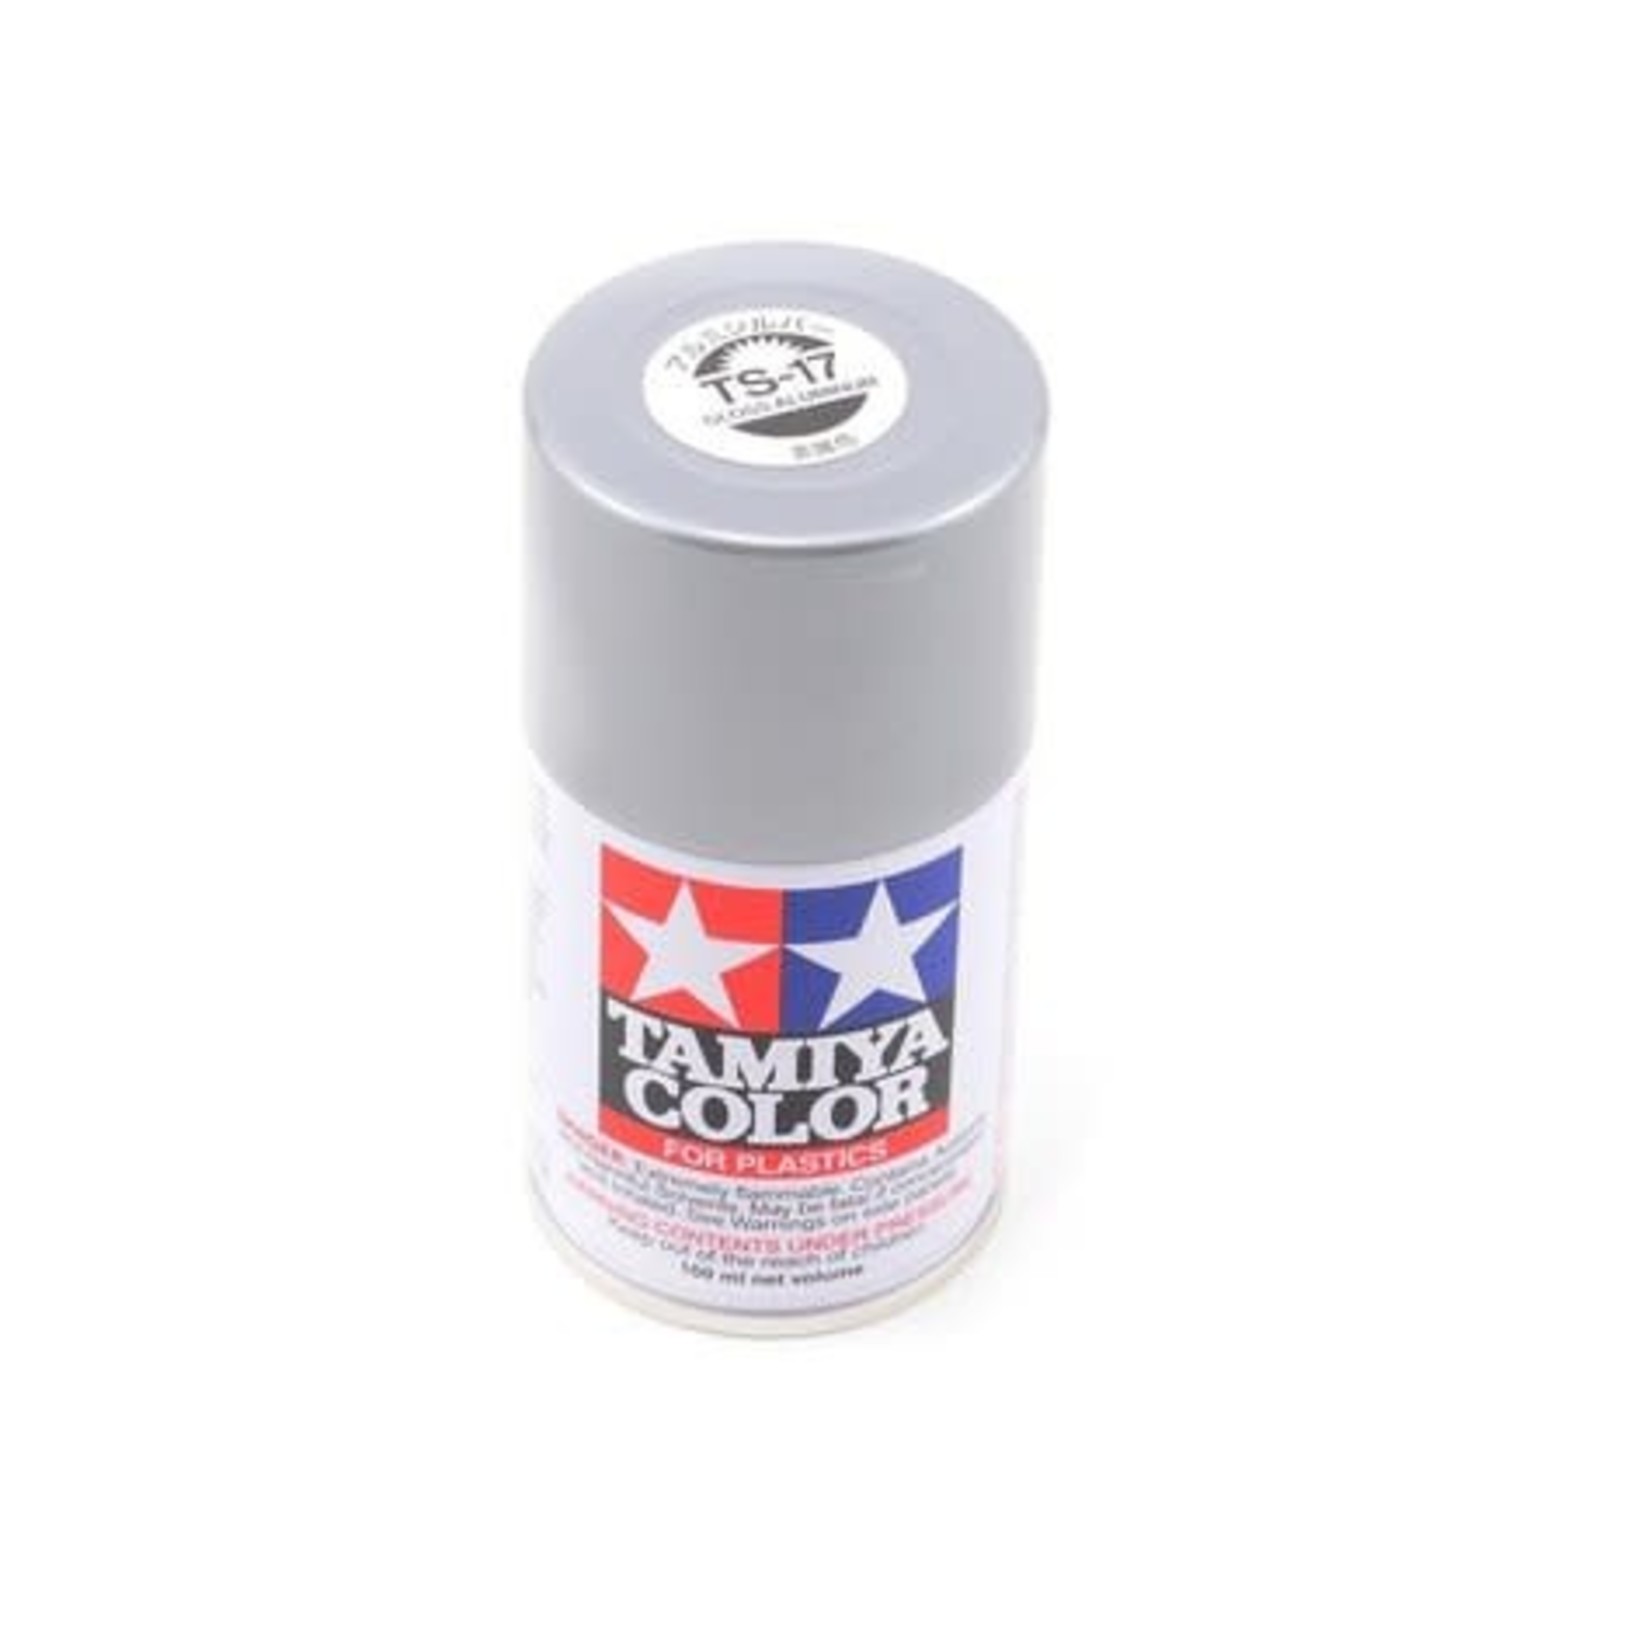 Tamiya Tamiya Aluminum Silver Lacquer Spray Paint (100ml) #85017